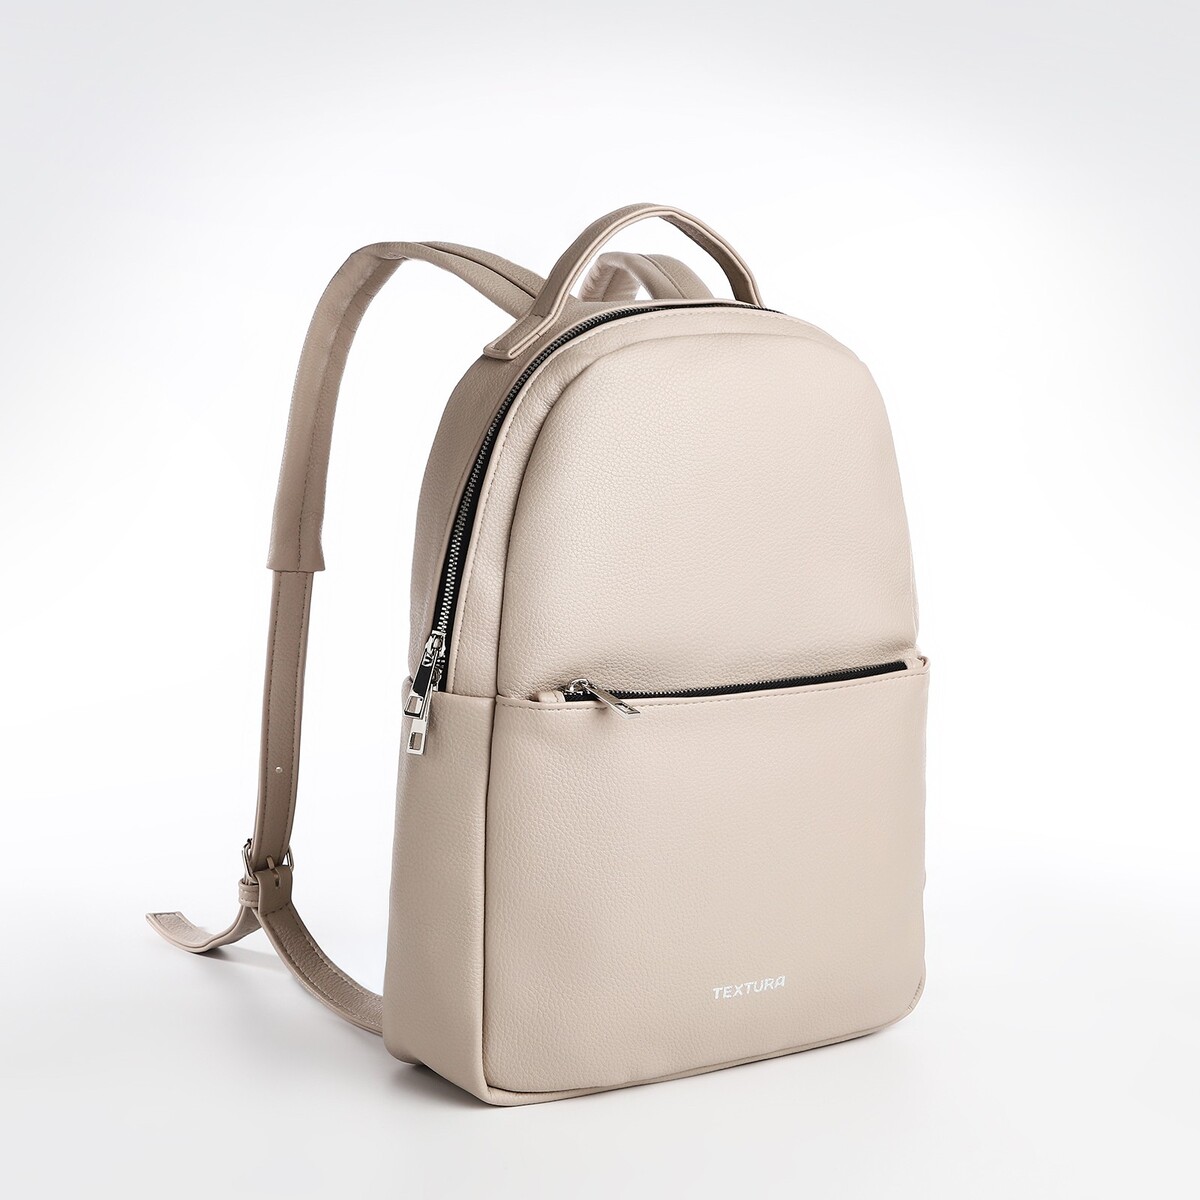 Рюкзак на молнии textura, наружный карман, цвет светло-бежевый